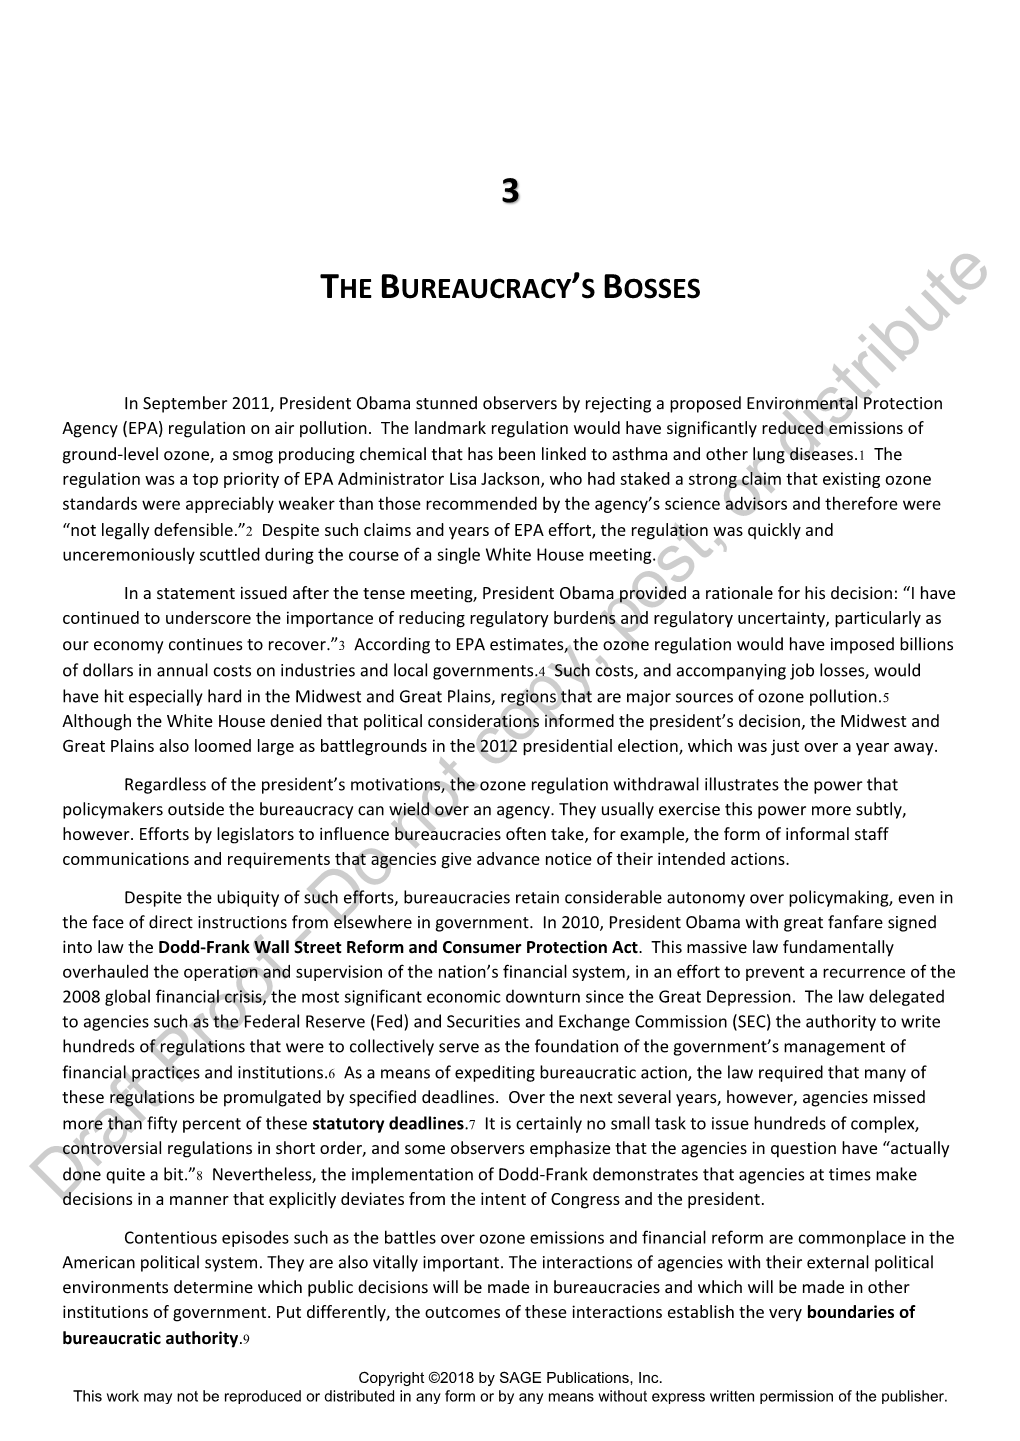 The Bureaucracy's Bosses